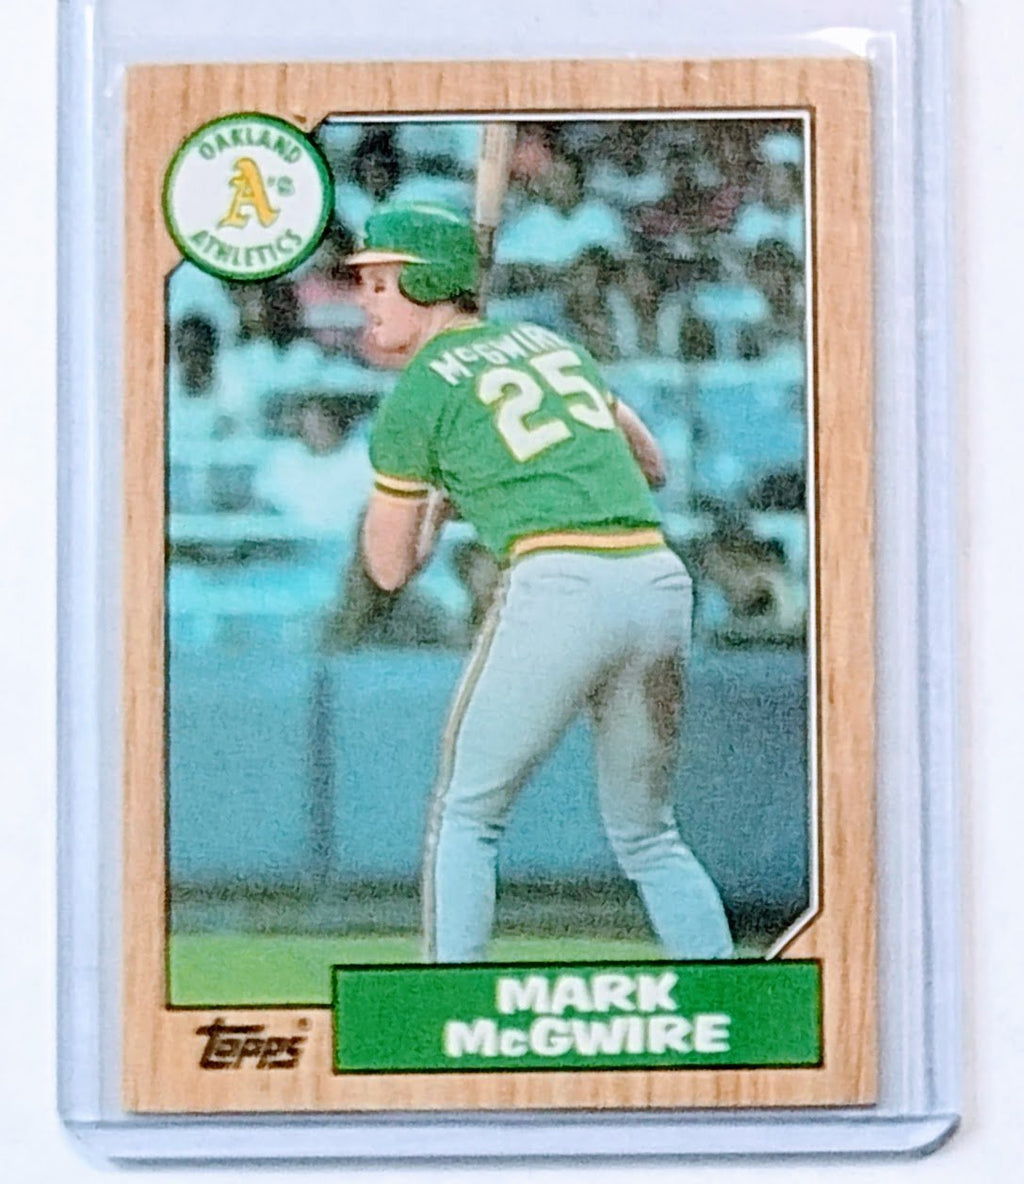 1987 Topps Mark McGwire Baseball Trading Card TPTV